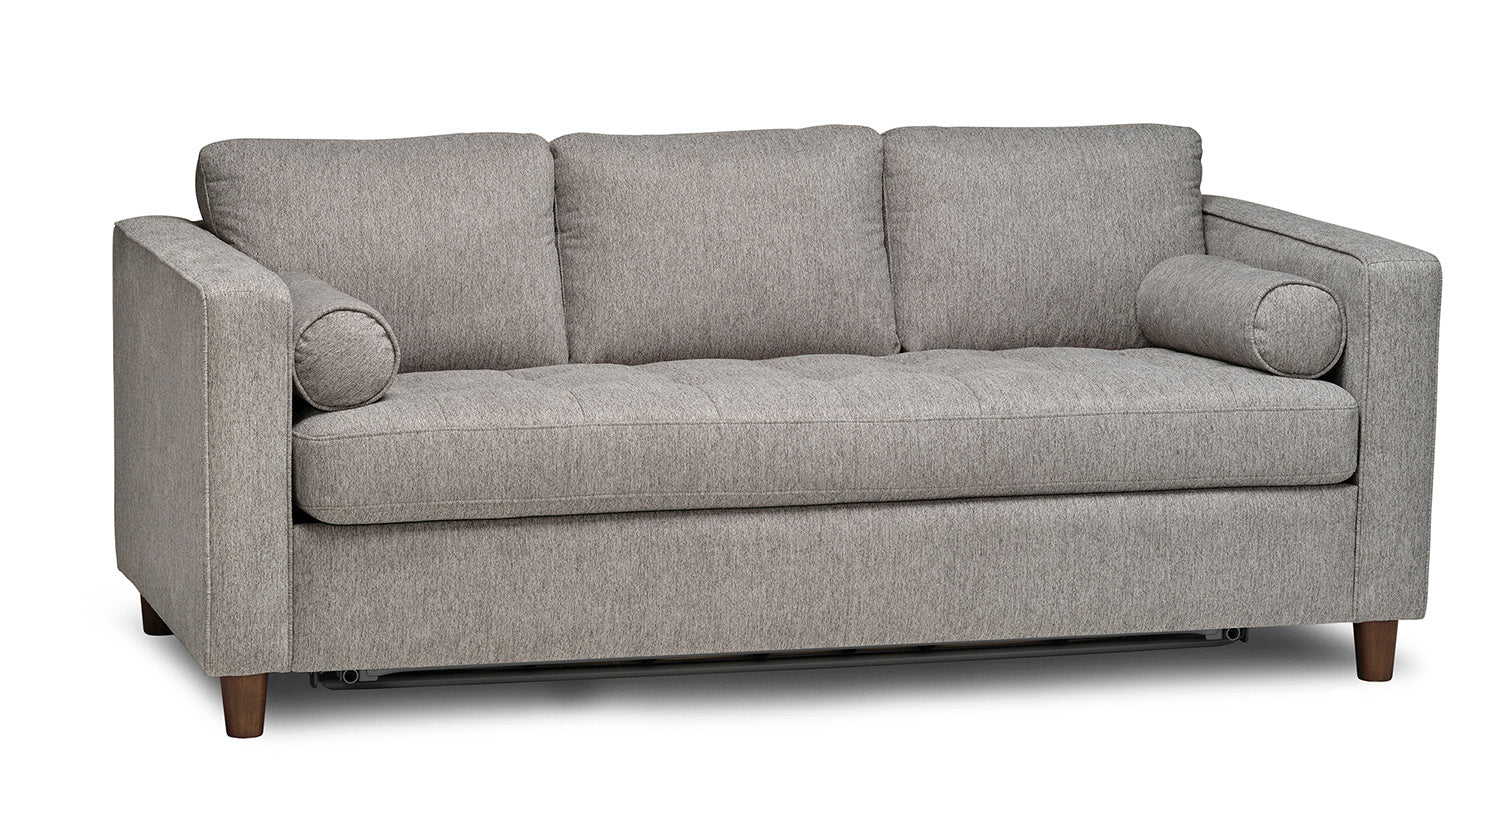 European Style Transformer Sofa Sleeper - Condo Queen Size